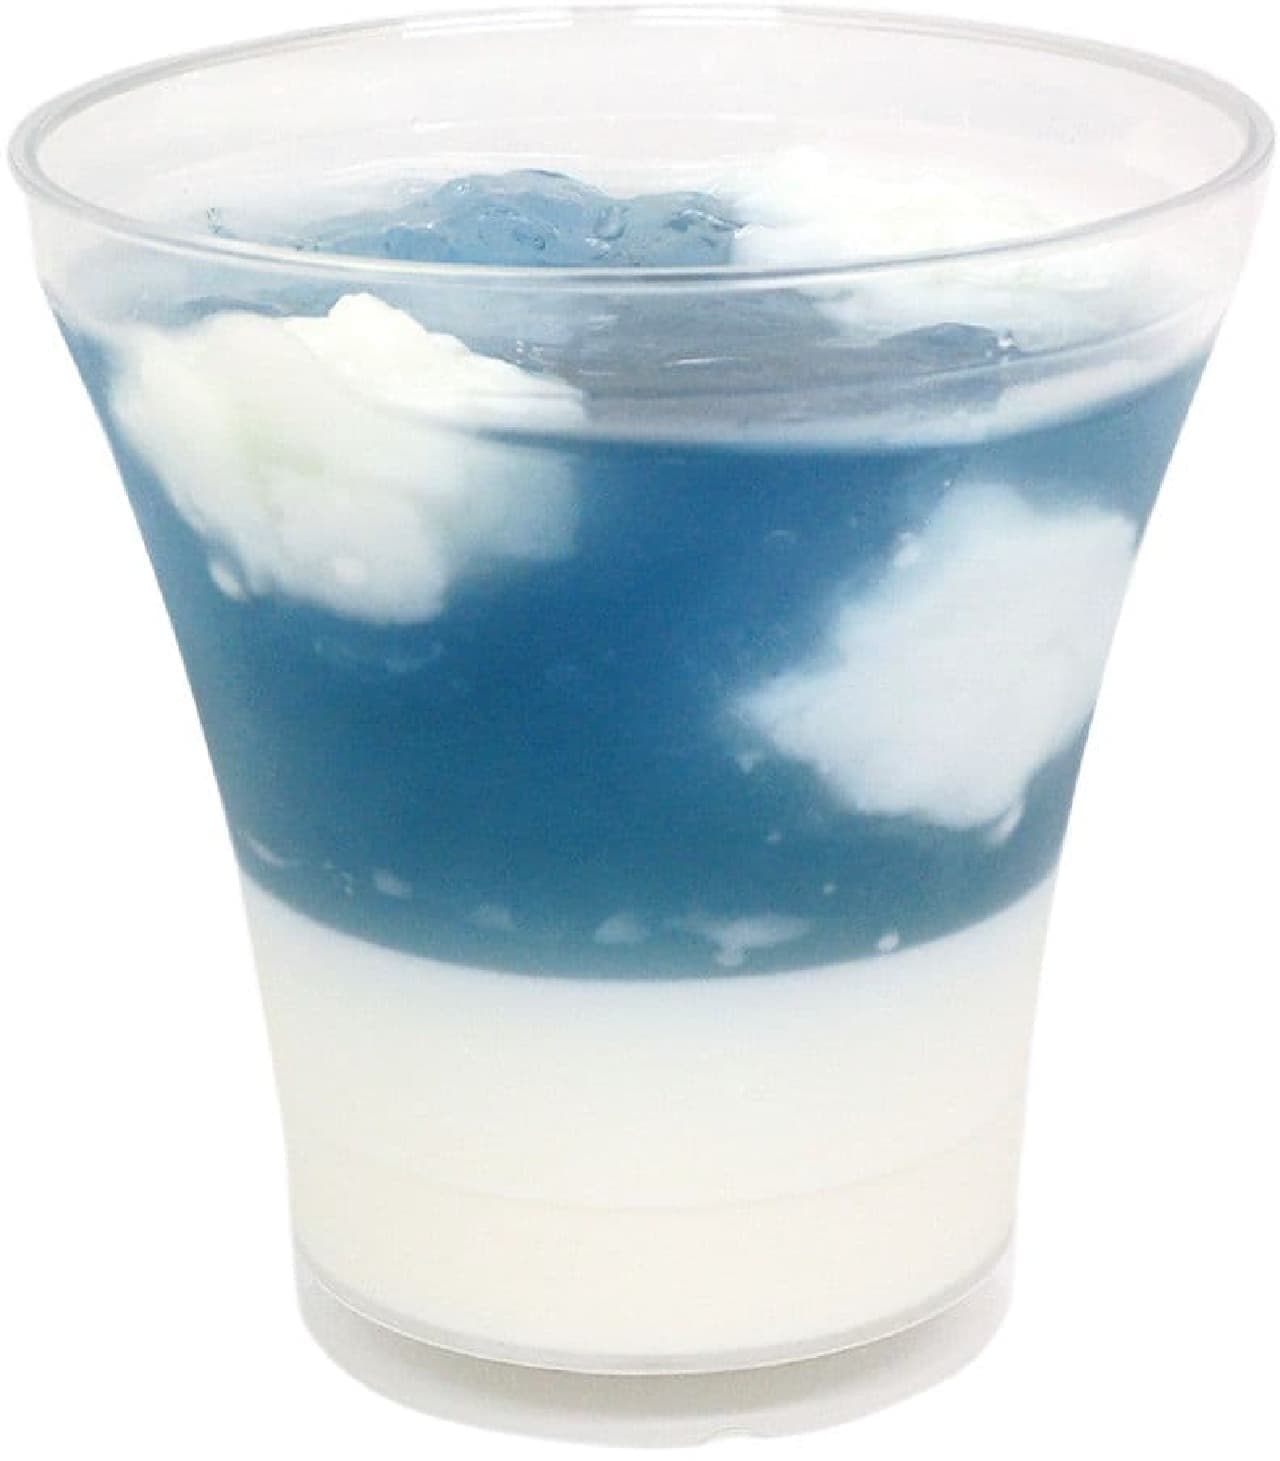 7-ELEVEN "Refreshing Aozora Soda Jelly & Milk Pudding